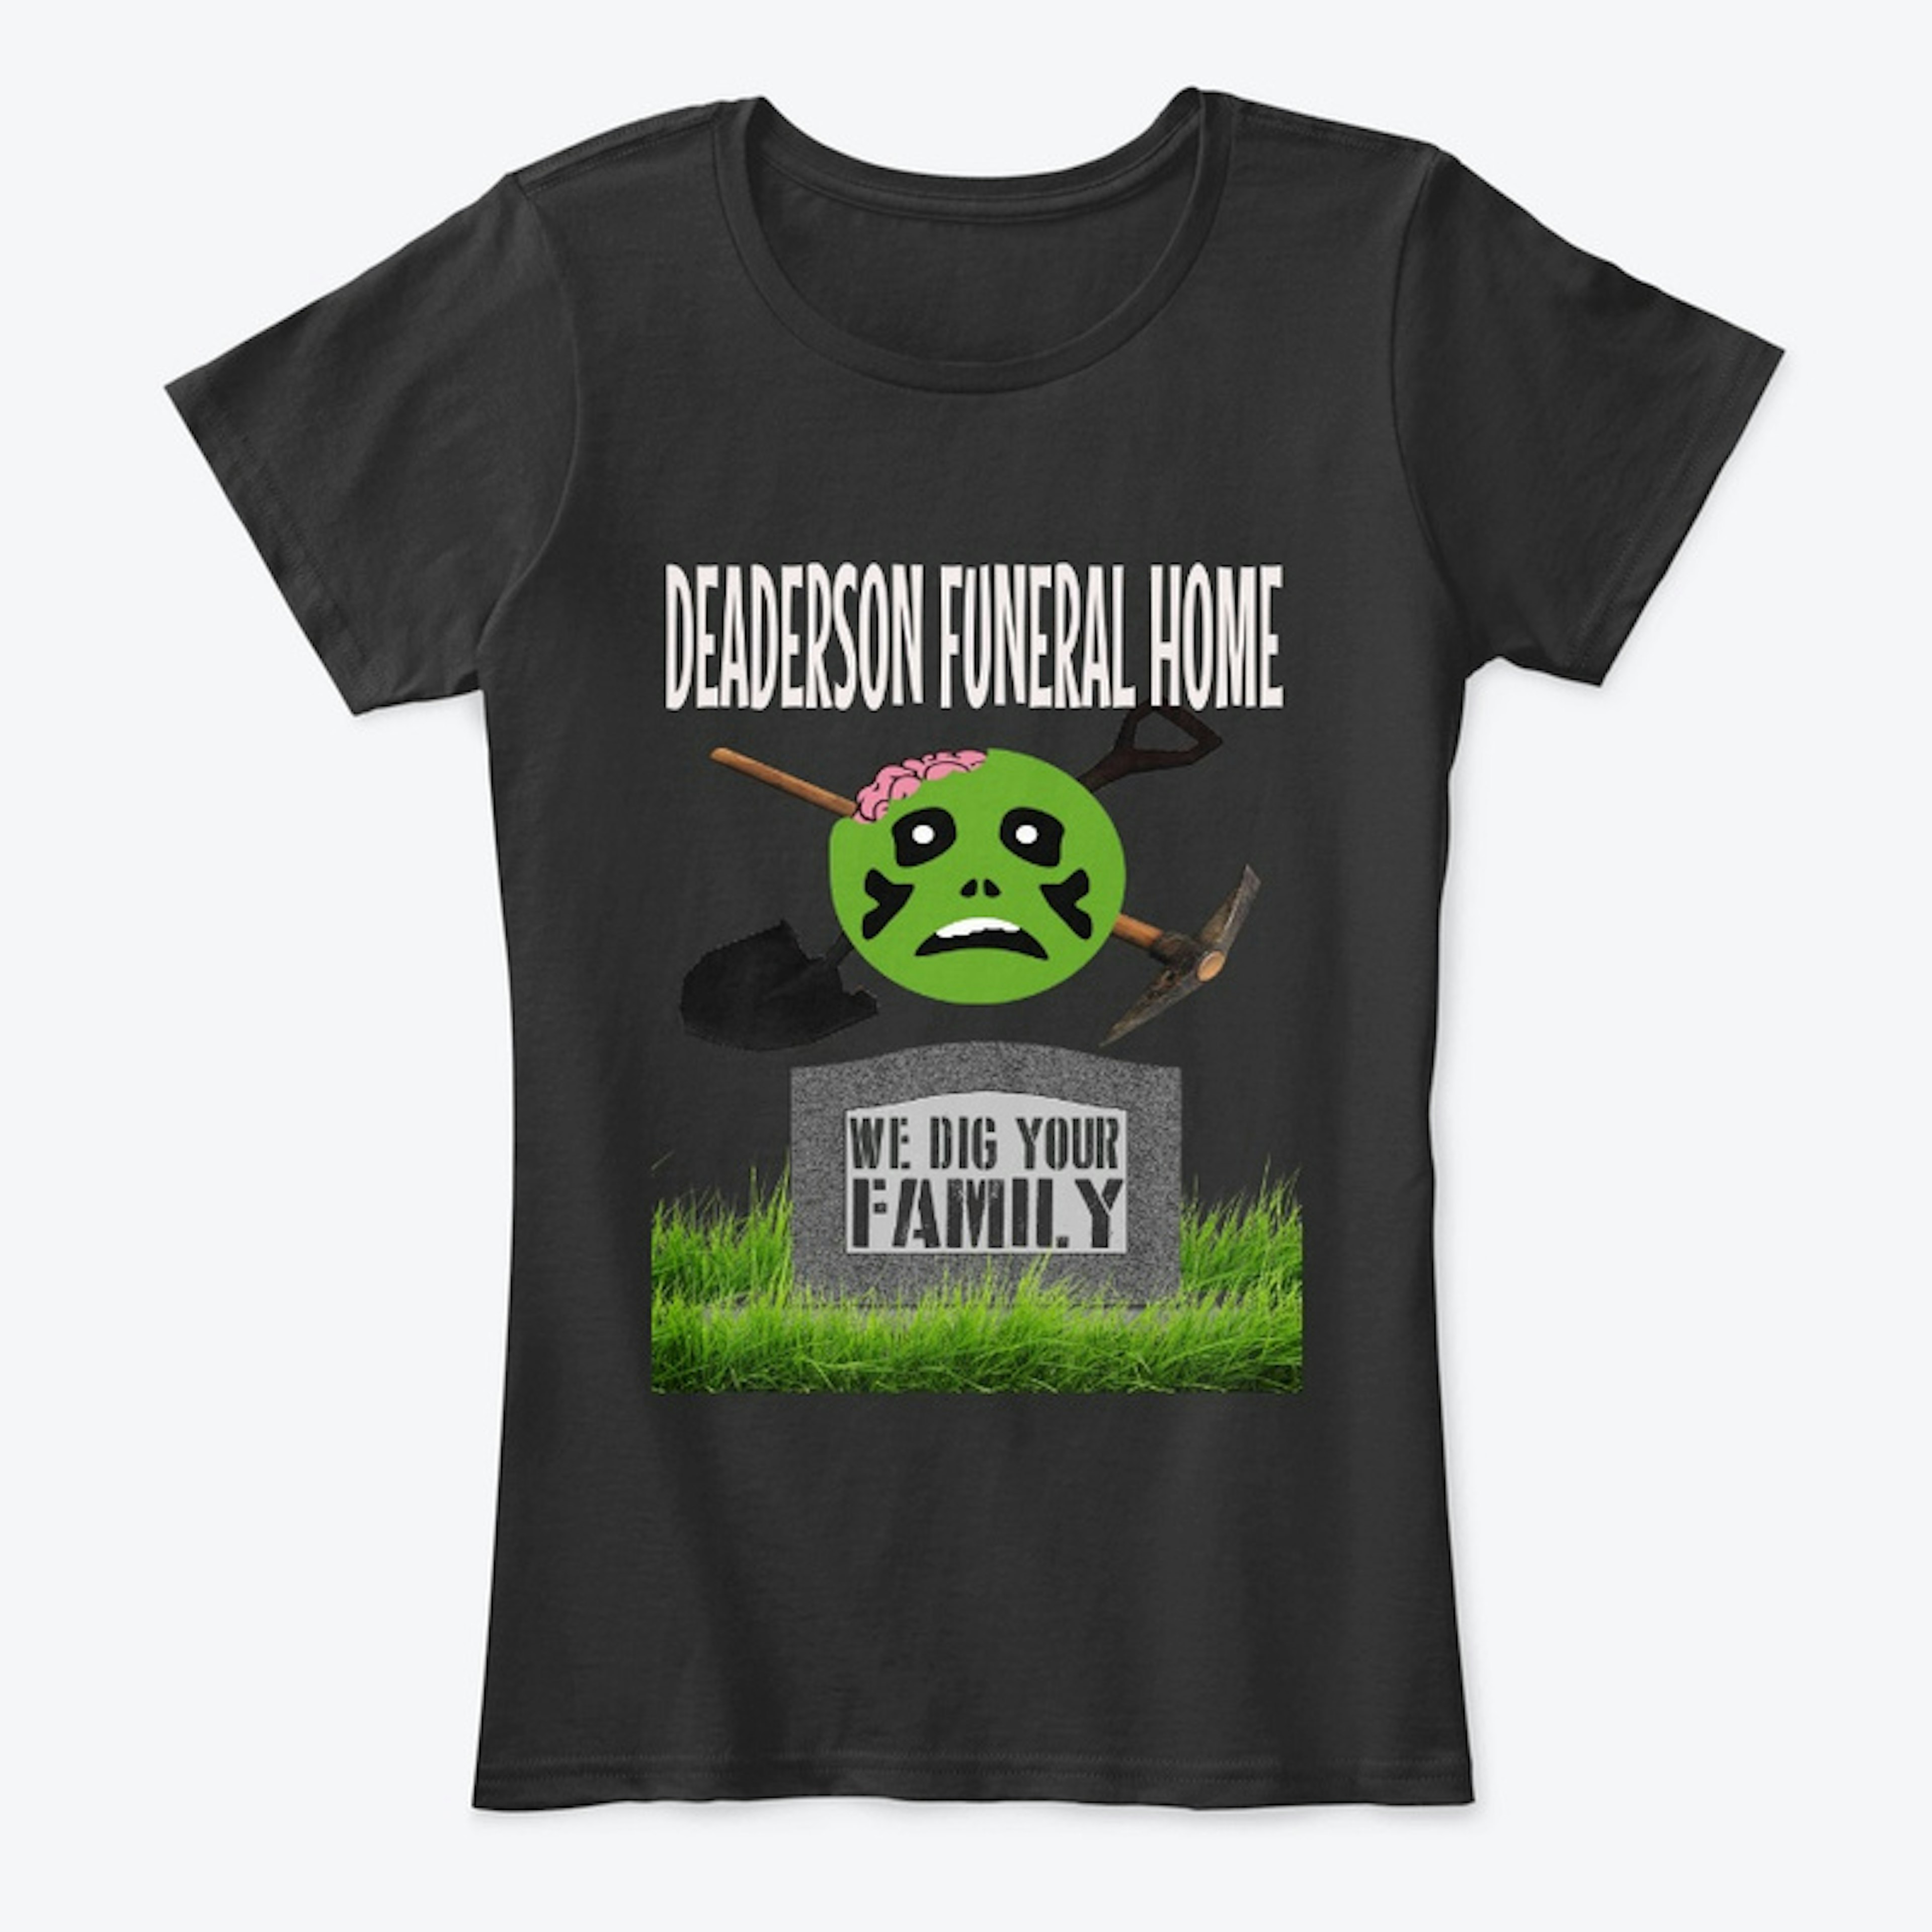 Deaderson Funeral Home Shirt